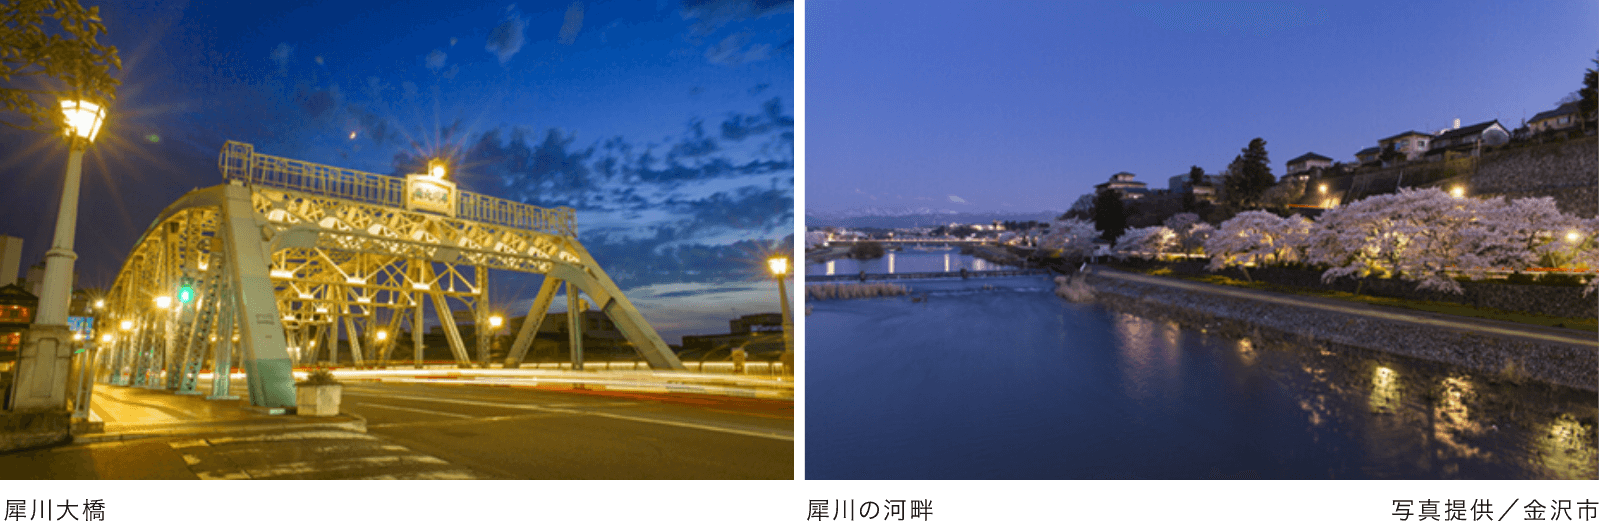 犀川大橋、犀川の河畔写真提供/金沢市